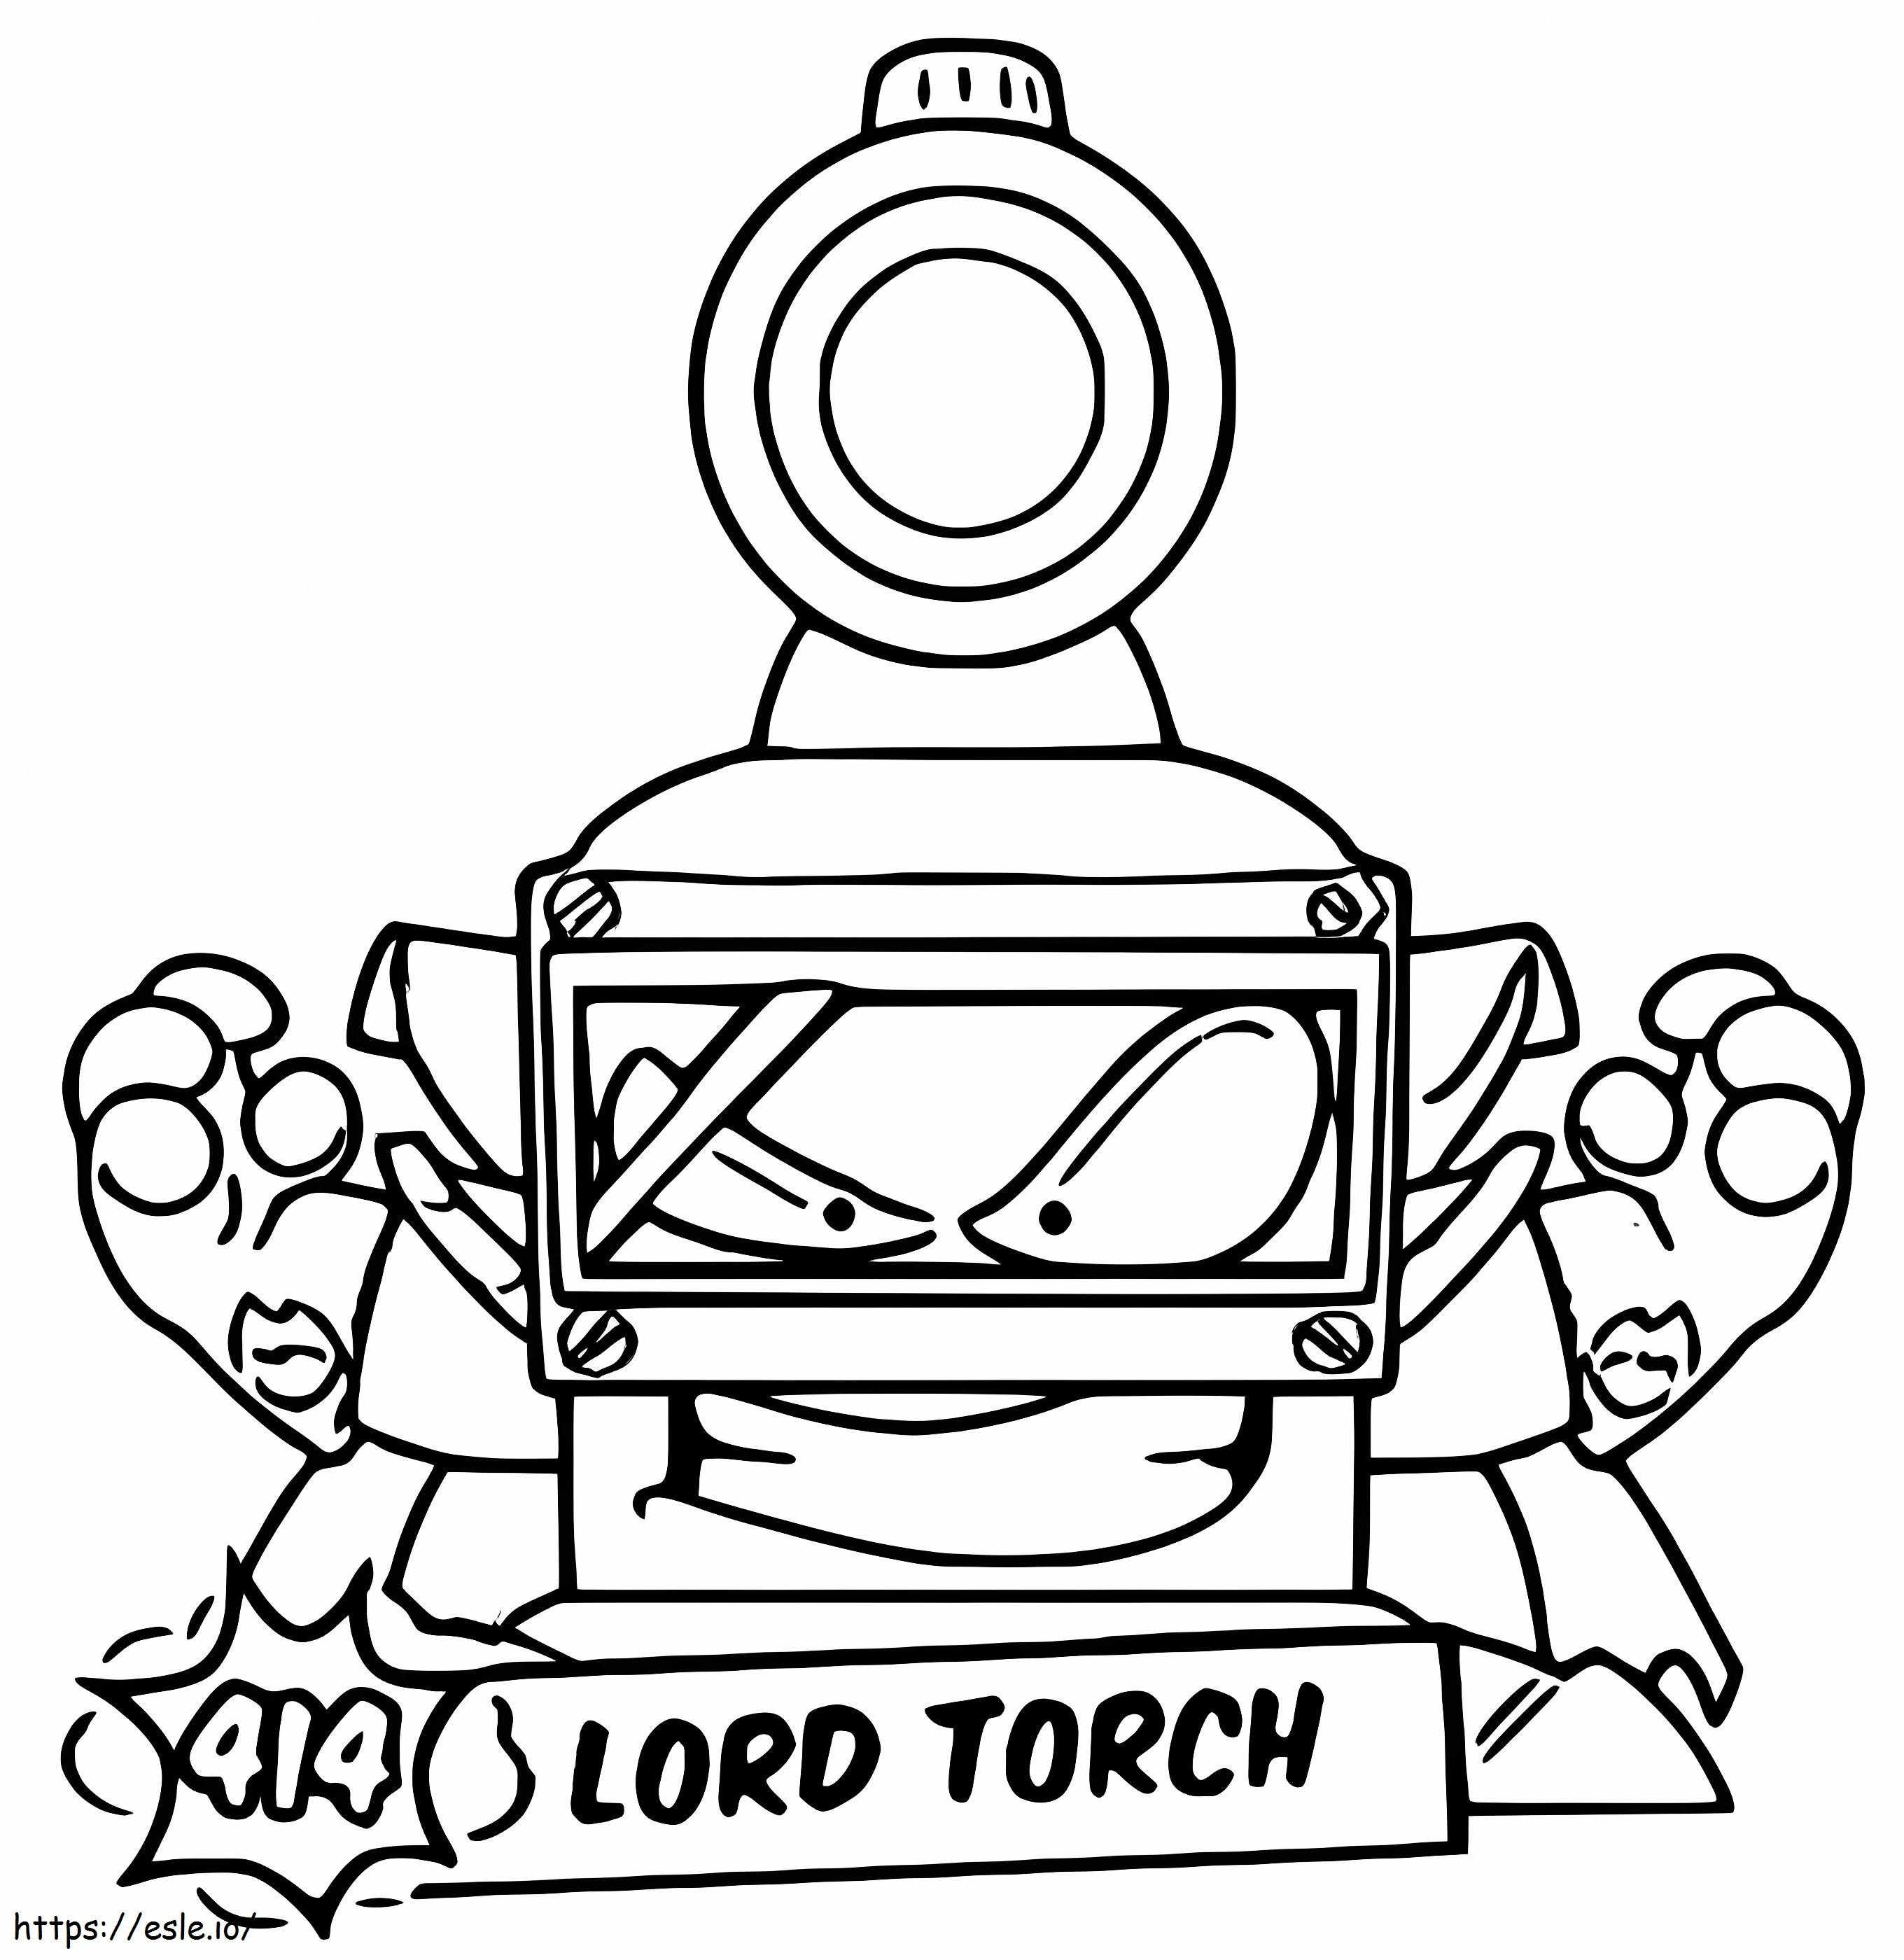 Coloriage Seigneur Torch Superzings à imprimer dessin